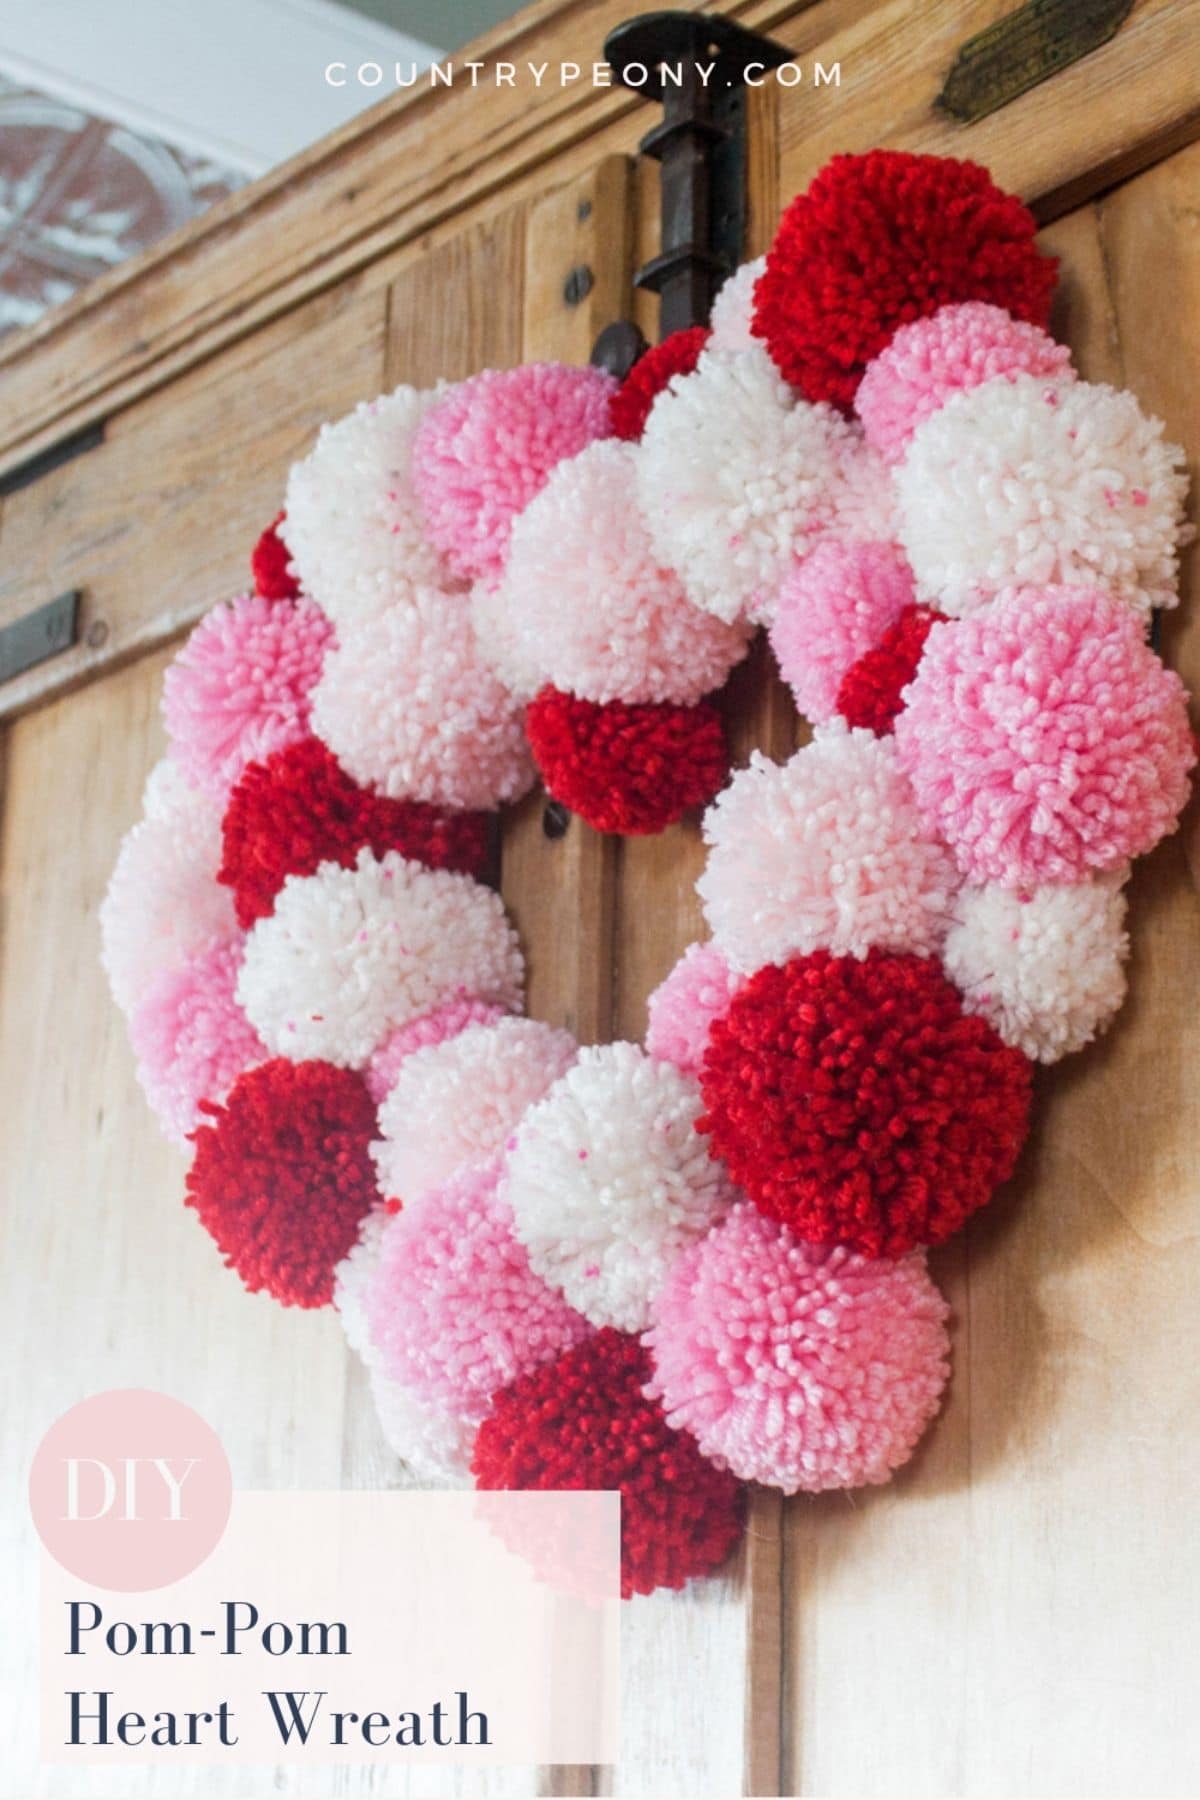 Pom pom heart wreath